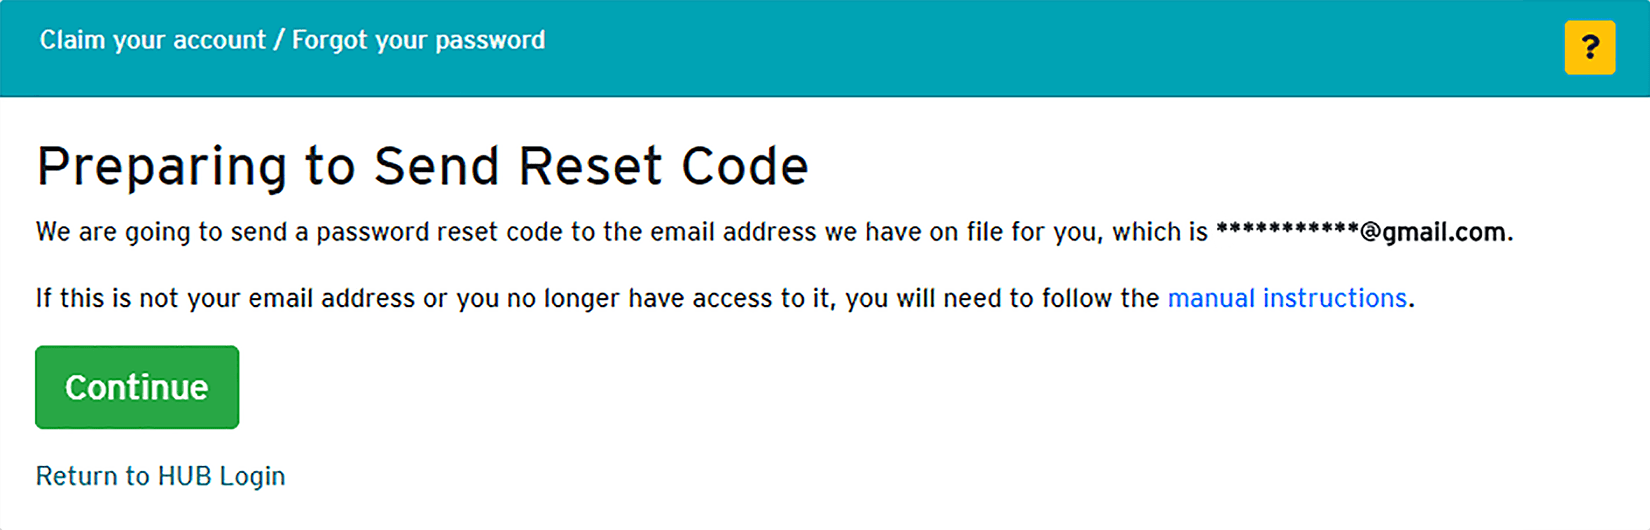 send reset code window